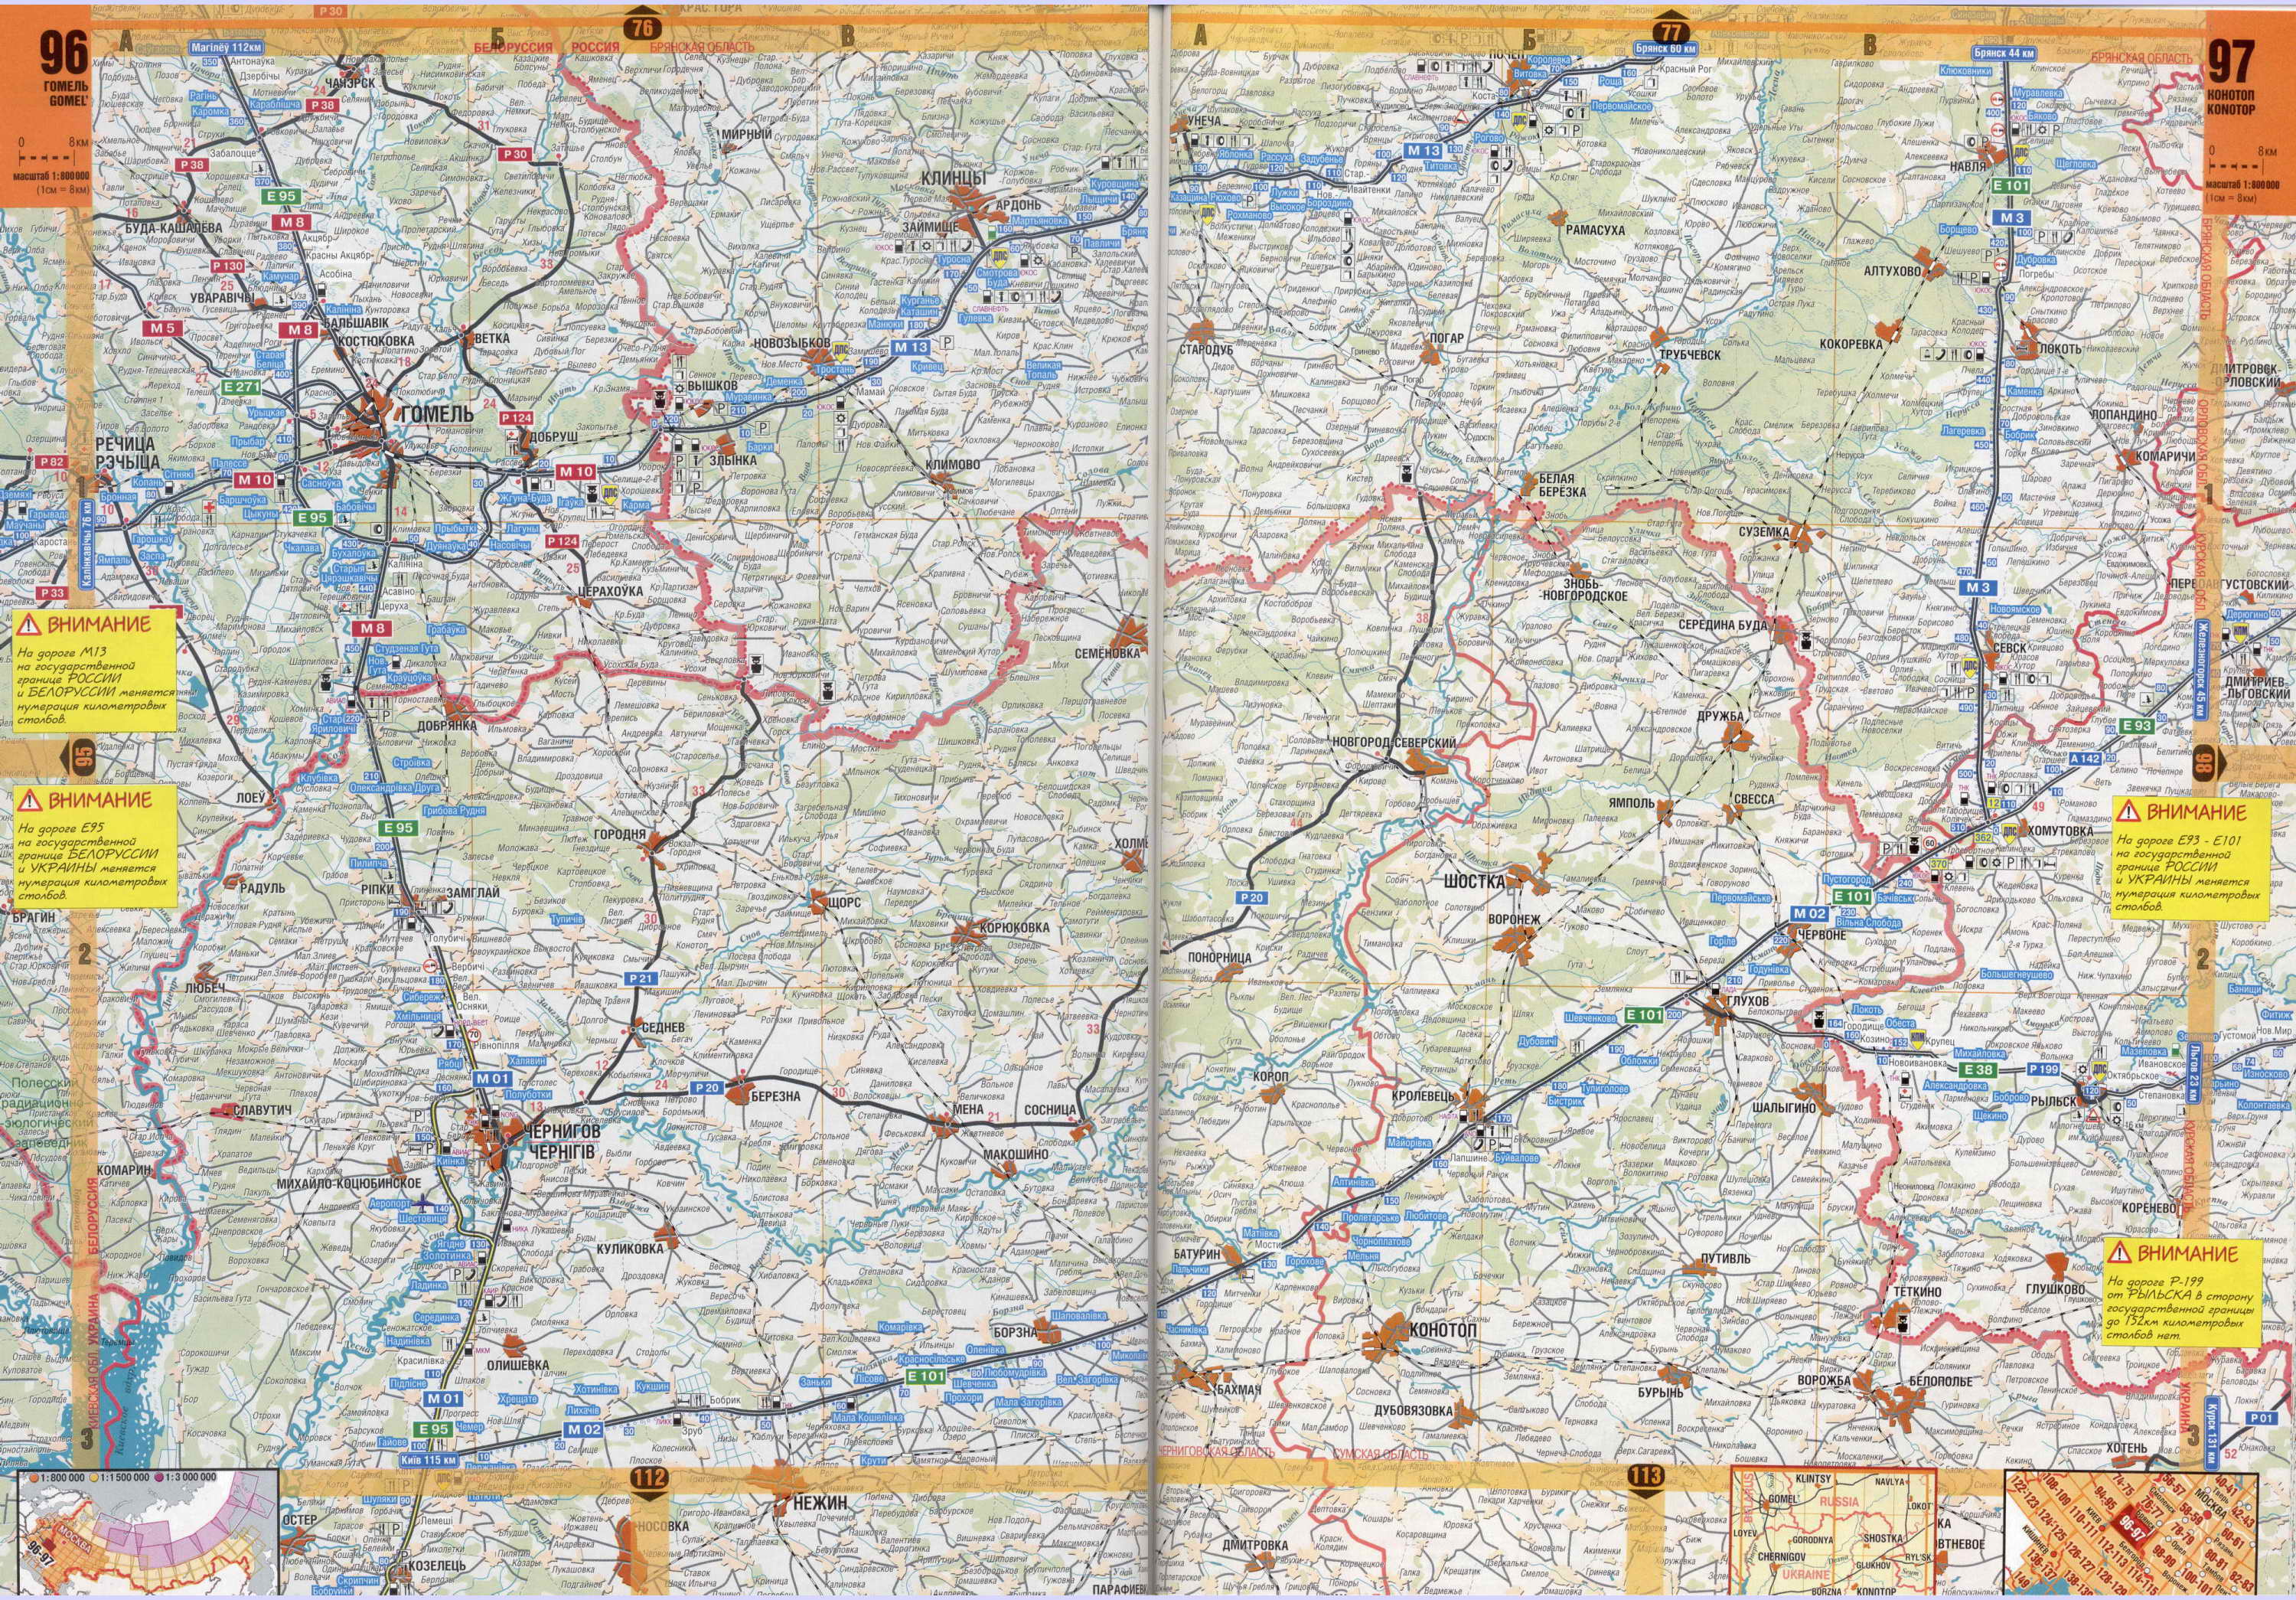 Автомобильная карта Курской области. Подробная карта автодорог масштаба 1см:8км - Курская область, A0 - 